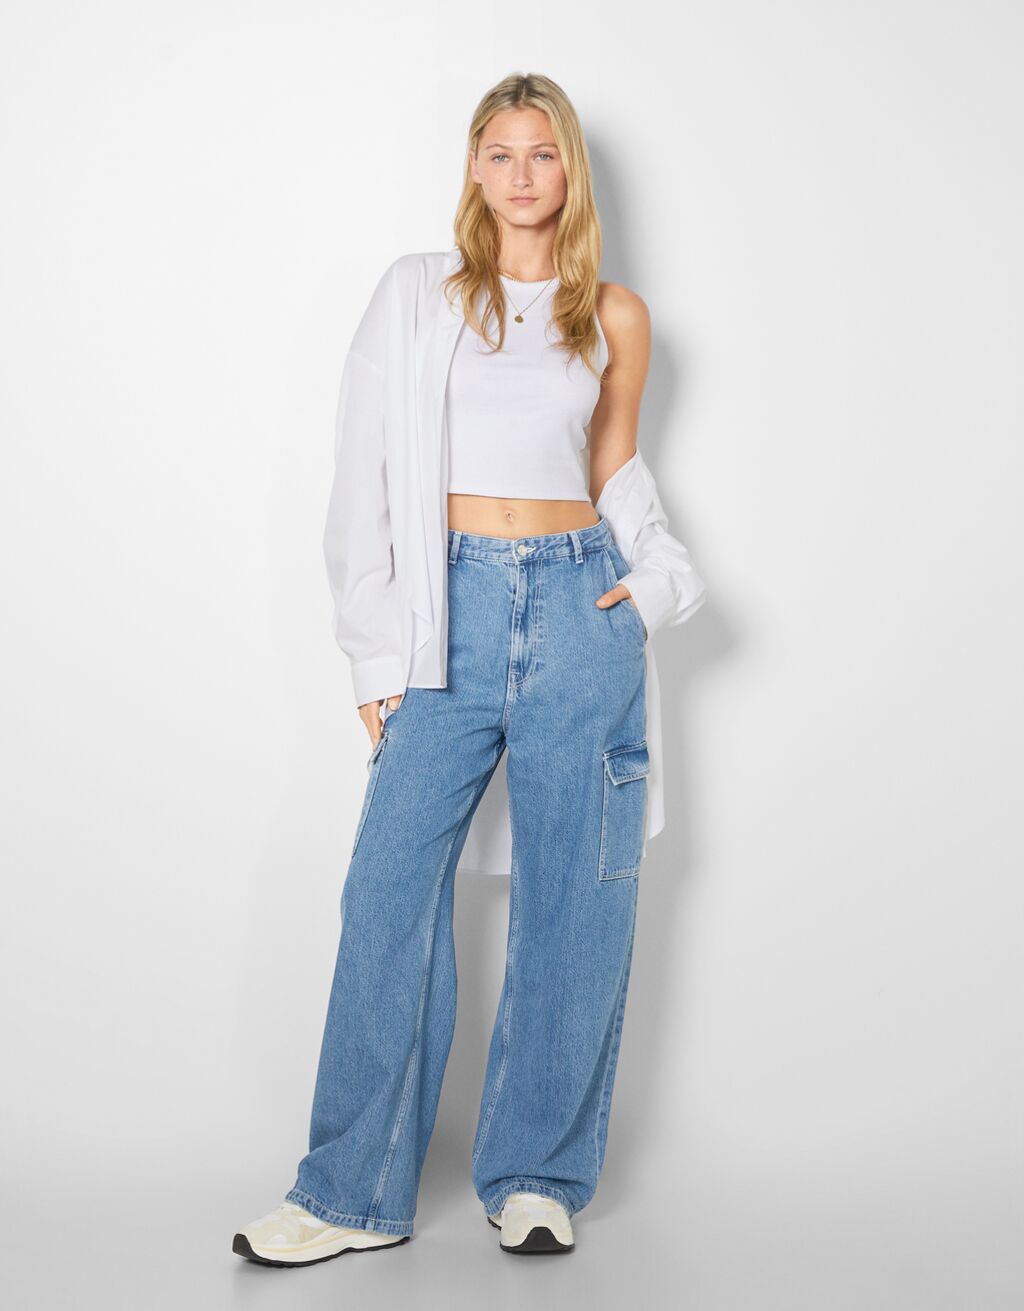 Jeans para | Colección | España